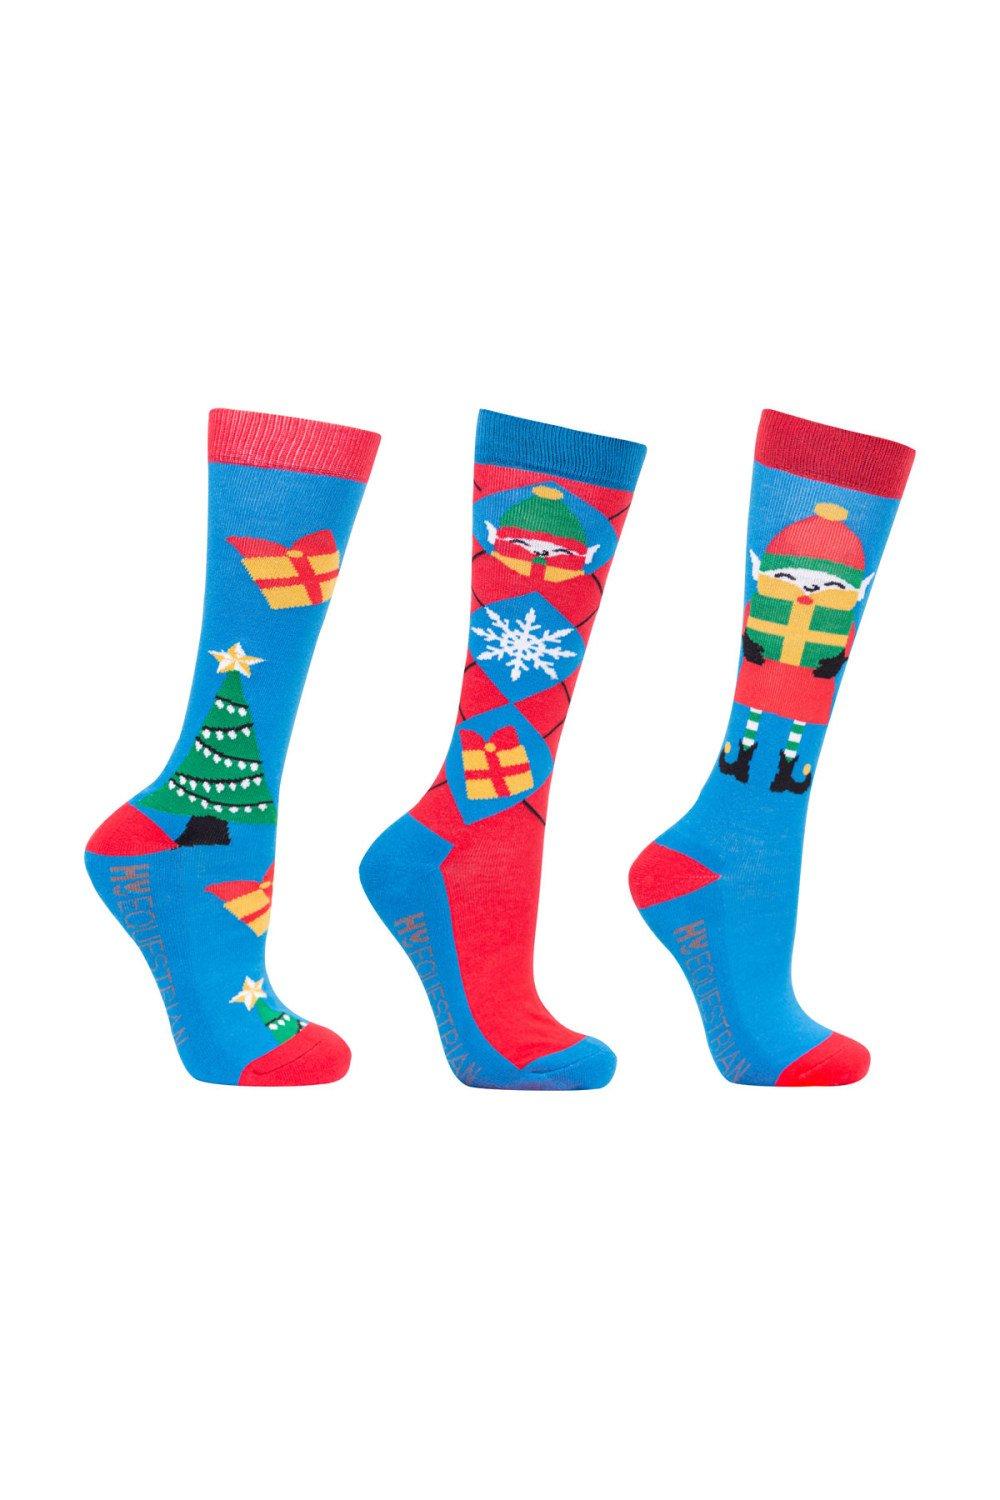 Jolly Elves Bamboo Christmas Socks (Pack of 3)